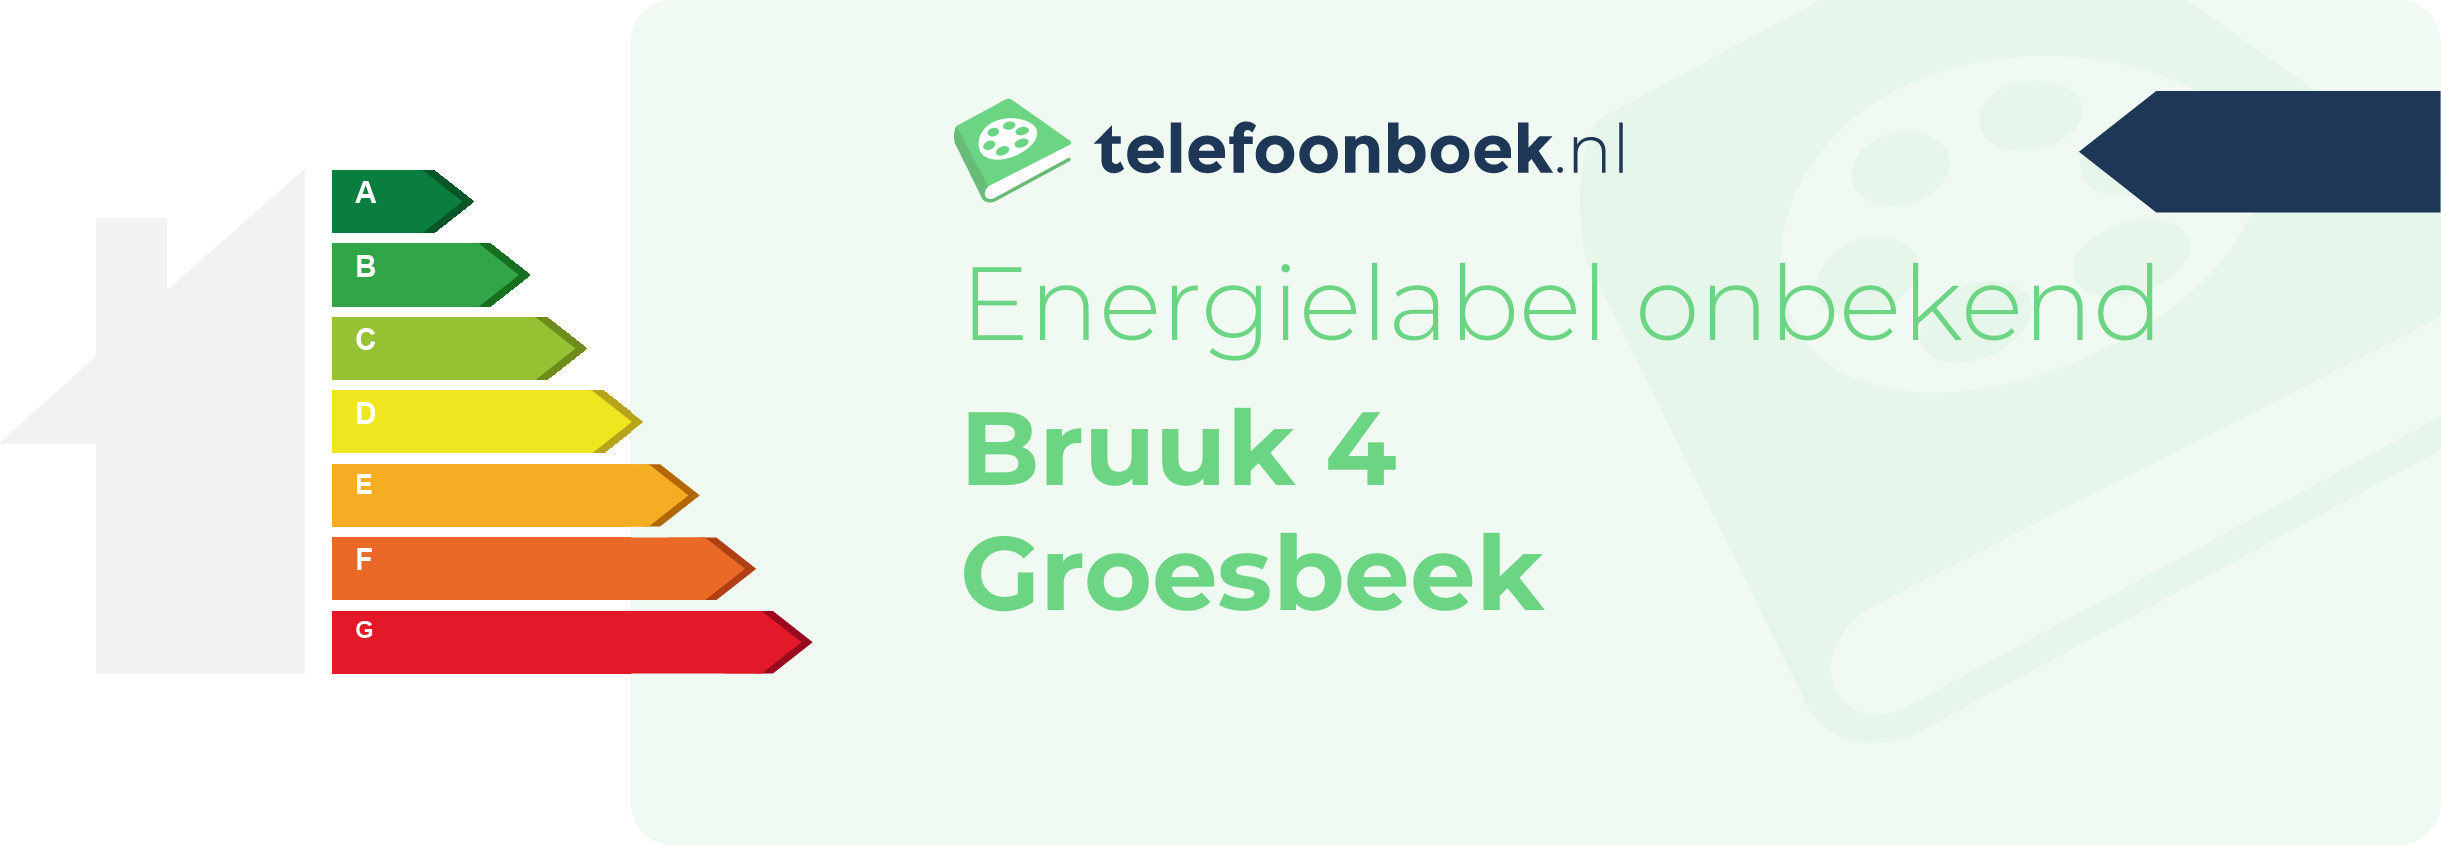 Energielabel Bruuk 4 Groesbeek